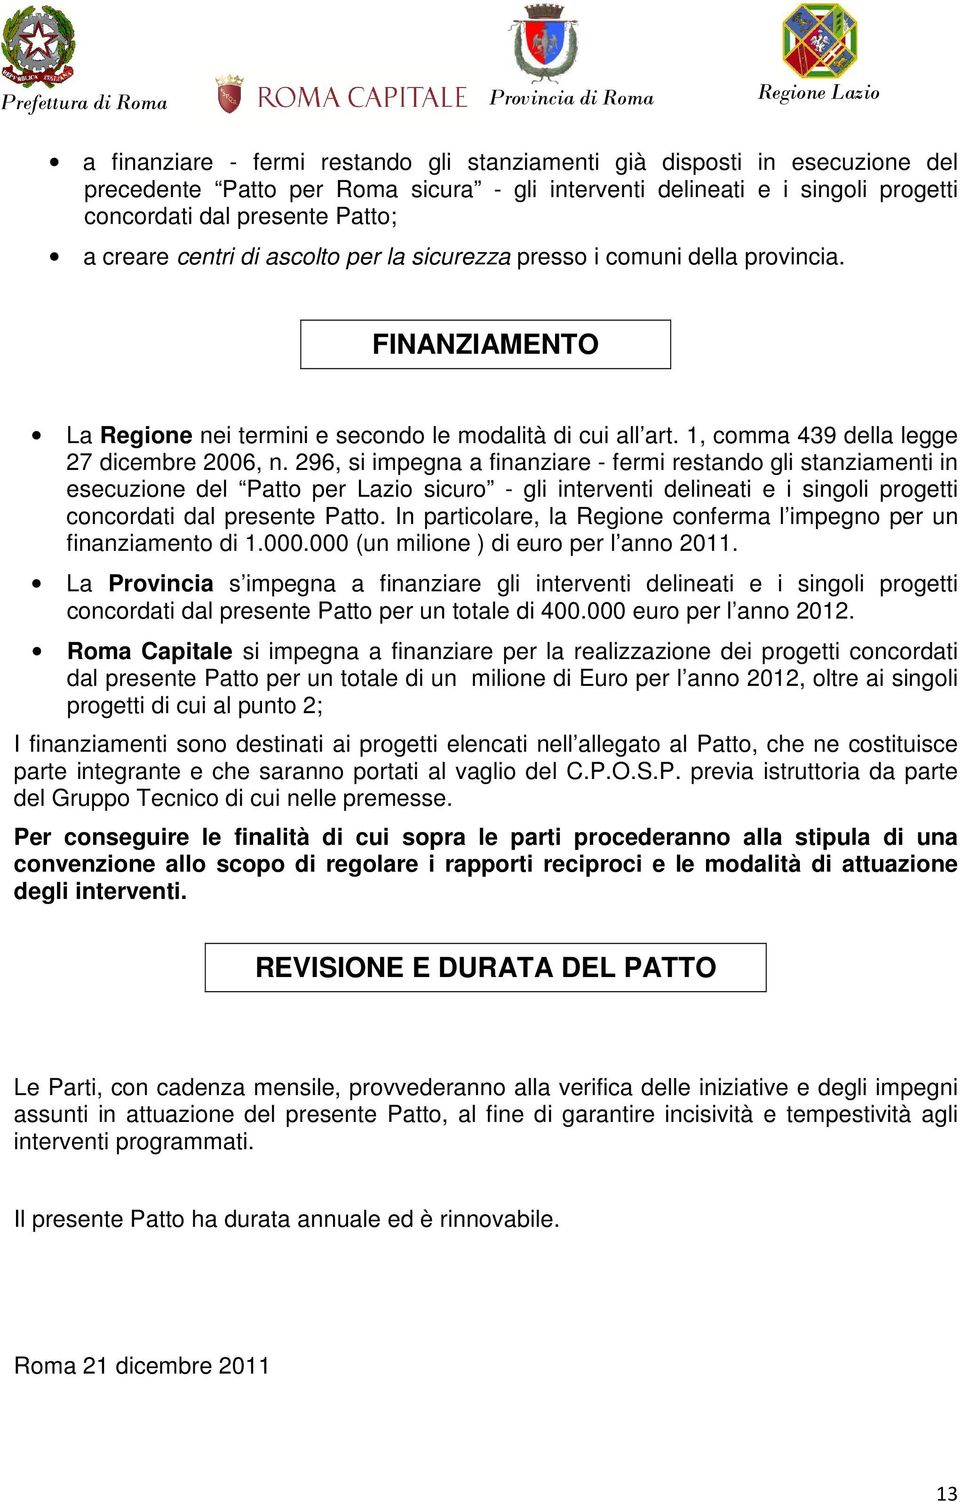 296, si impegna a finanziare - fermi restando gli stanziamenti in esecuzione del Patto per Lazio sicuro - gli interventi delineati e i singoli progetti concordati dal presente Patto.